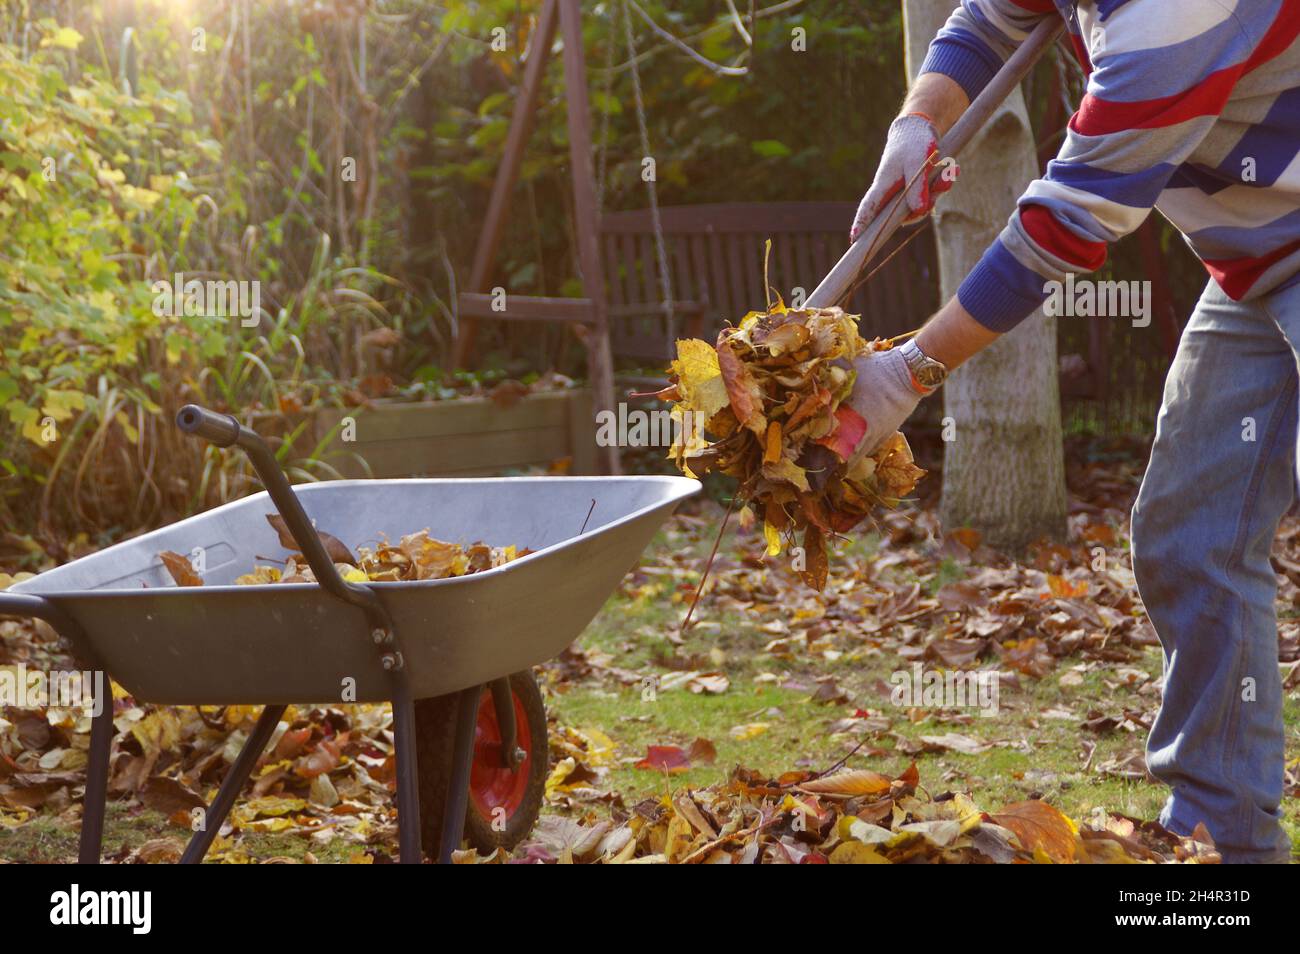 Herbstblattreinigung im Garten. Der Mann reckt die Blätter im Park und wirft sie in den Papierkorb. Stockfoto